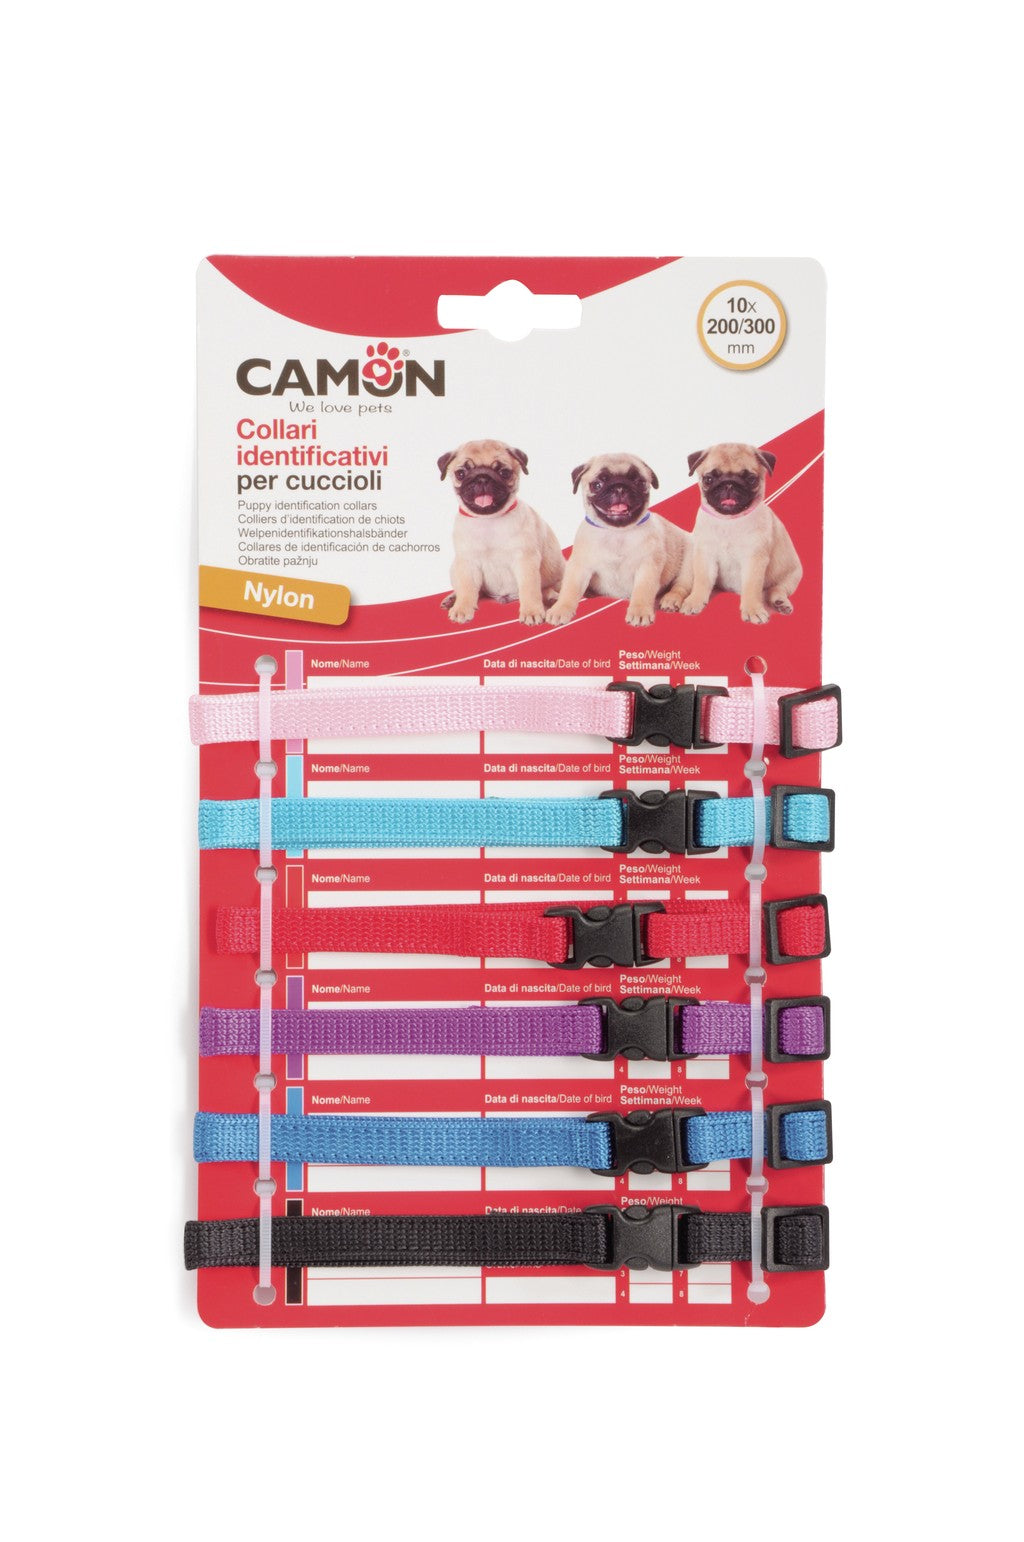 Camon Collari identificativi per cuccioli con sgancio di sicurezza - DC0330 - 10x200/300 mm